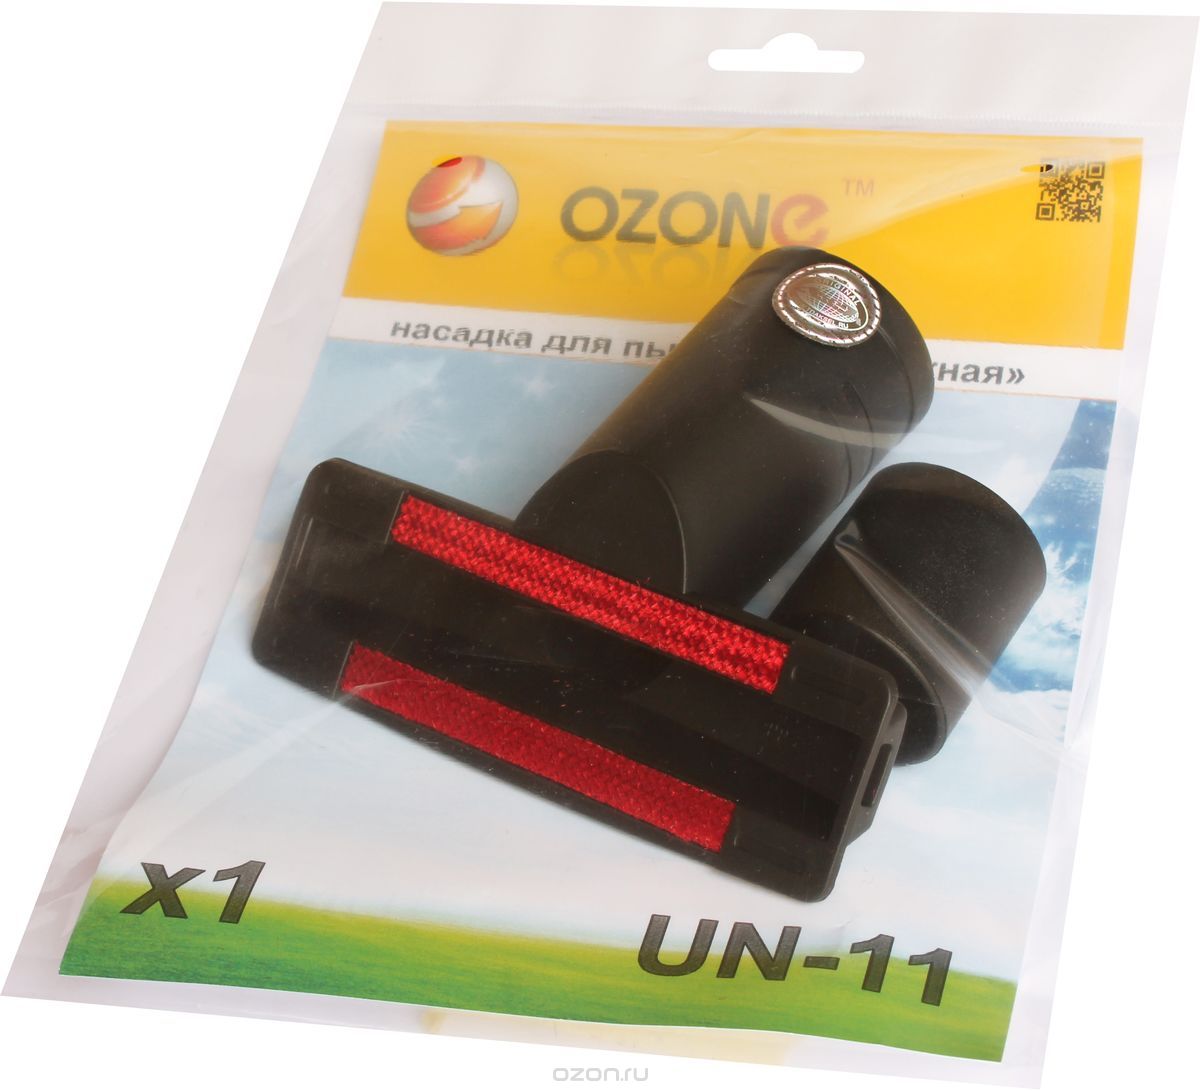 Ozone UN-11  